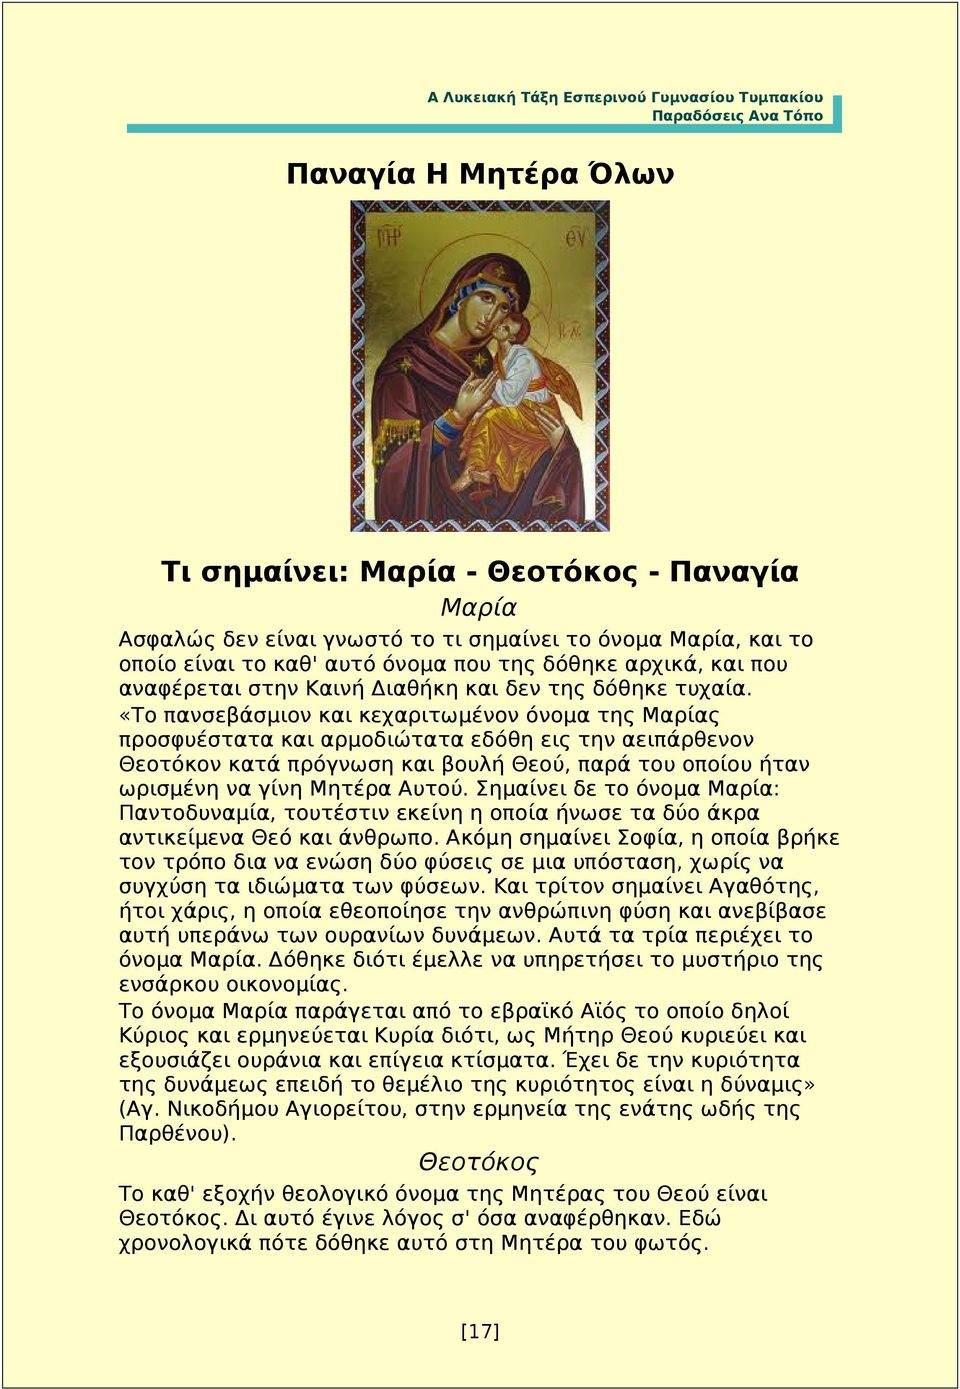 «Το πανσεβάσμιον και κεχαριτωμένον όνομα της Μαρίας προσφυέστατα και αρμοδιώτατα εδόθη εις την αειπάρθενον Θεοτόκον κατά πρόγνωση και βουλή Θεού, παρά του οποίου ήταν ωρισμένη να γίνη Μητέρα Αυτού.